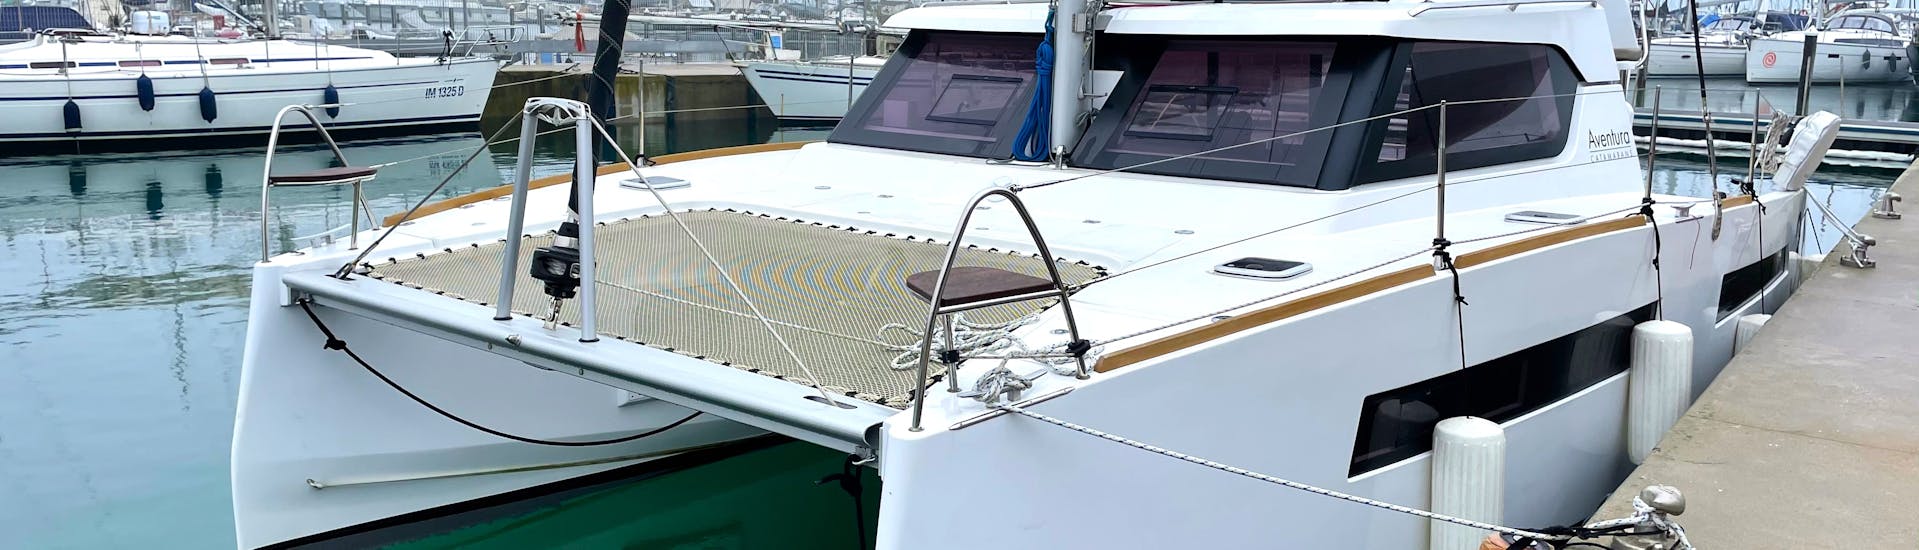 Foto de uno de los catamaranes utilizados para el paso privado en catamarán a las Cuevas Marinas de Polignano a Mare con Rent Me Charter.